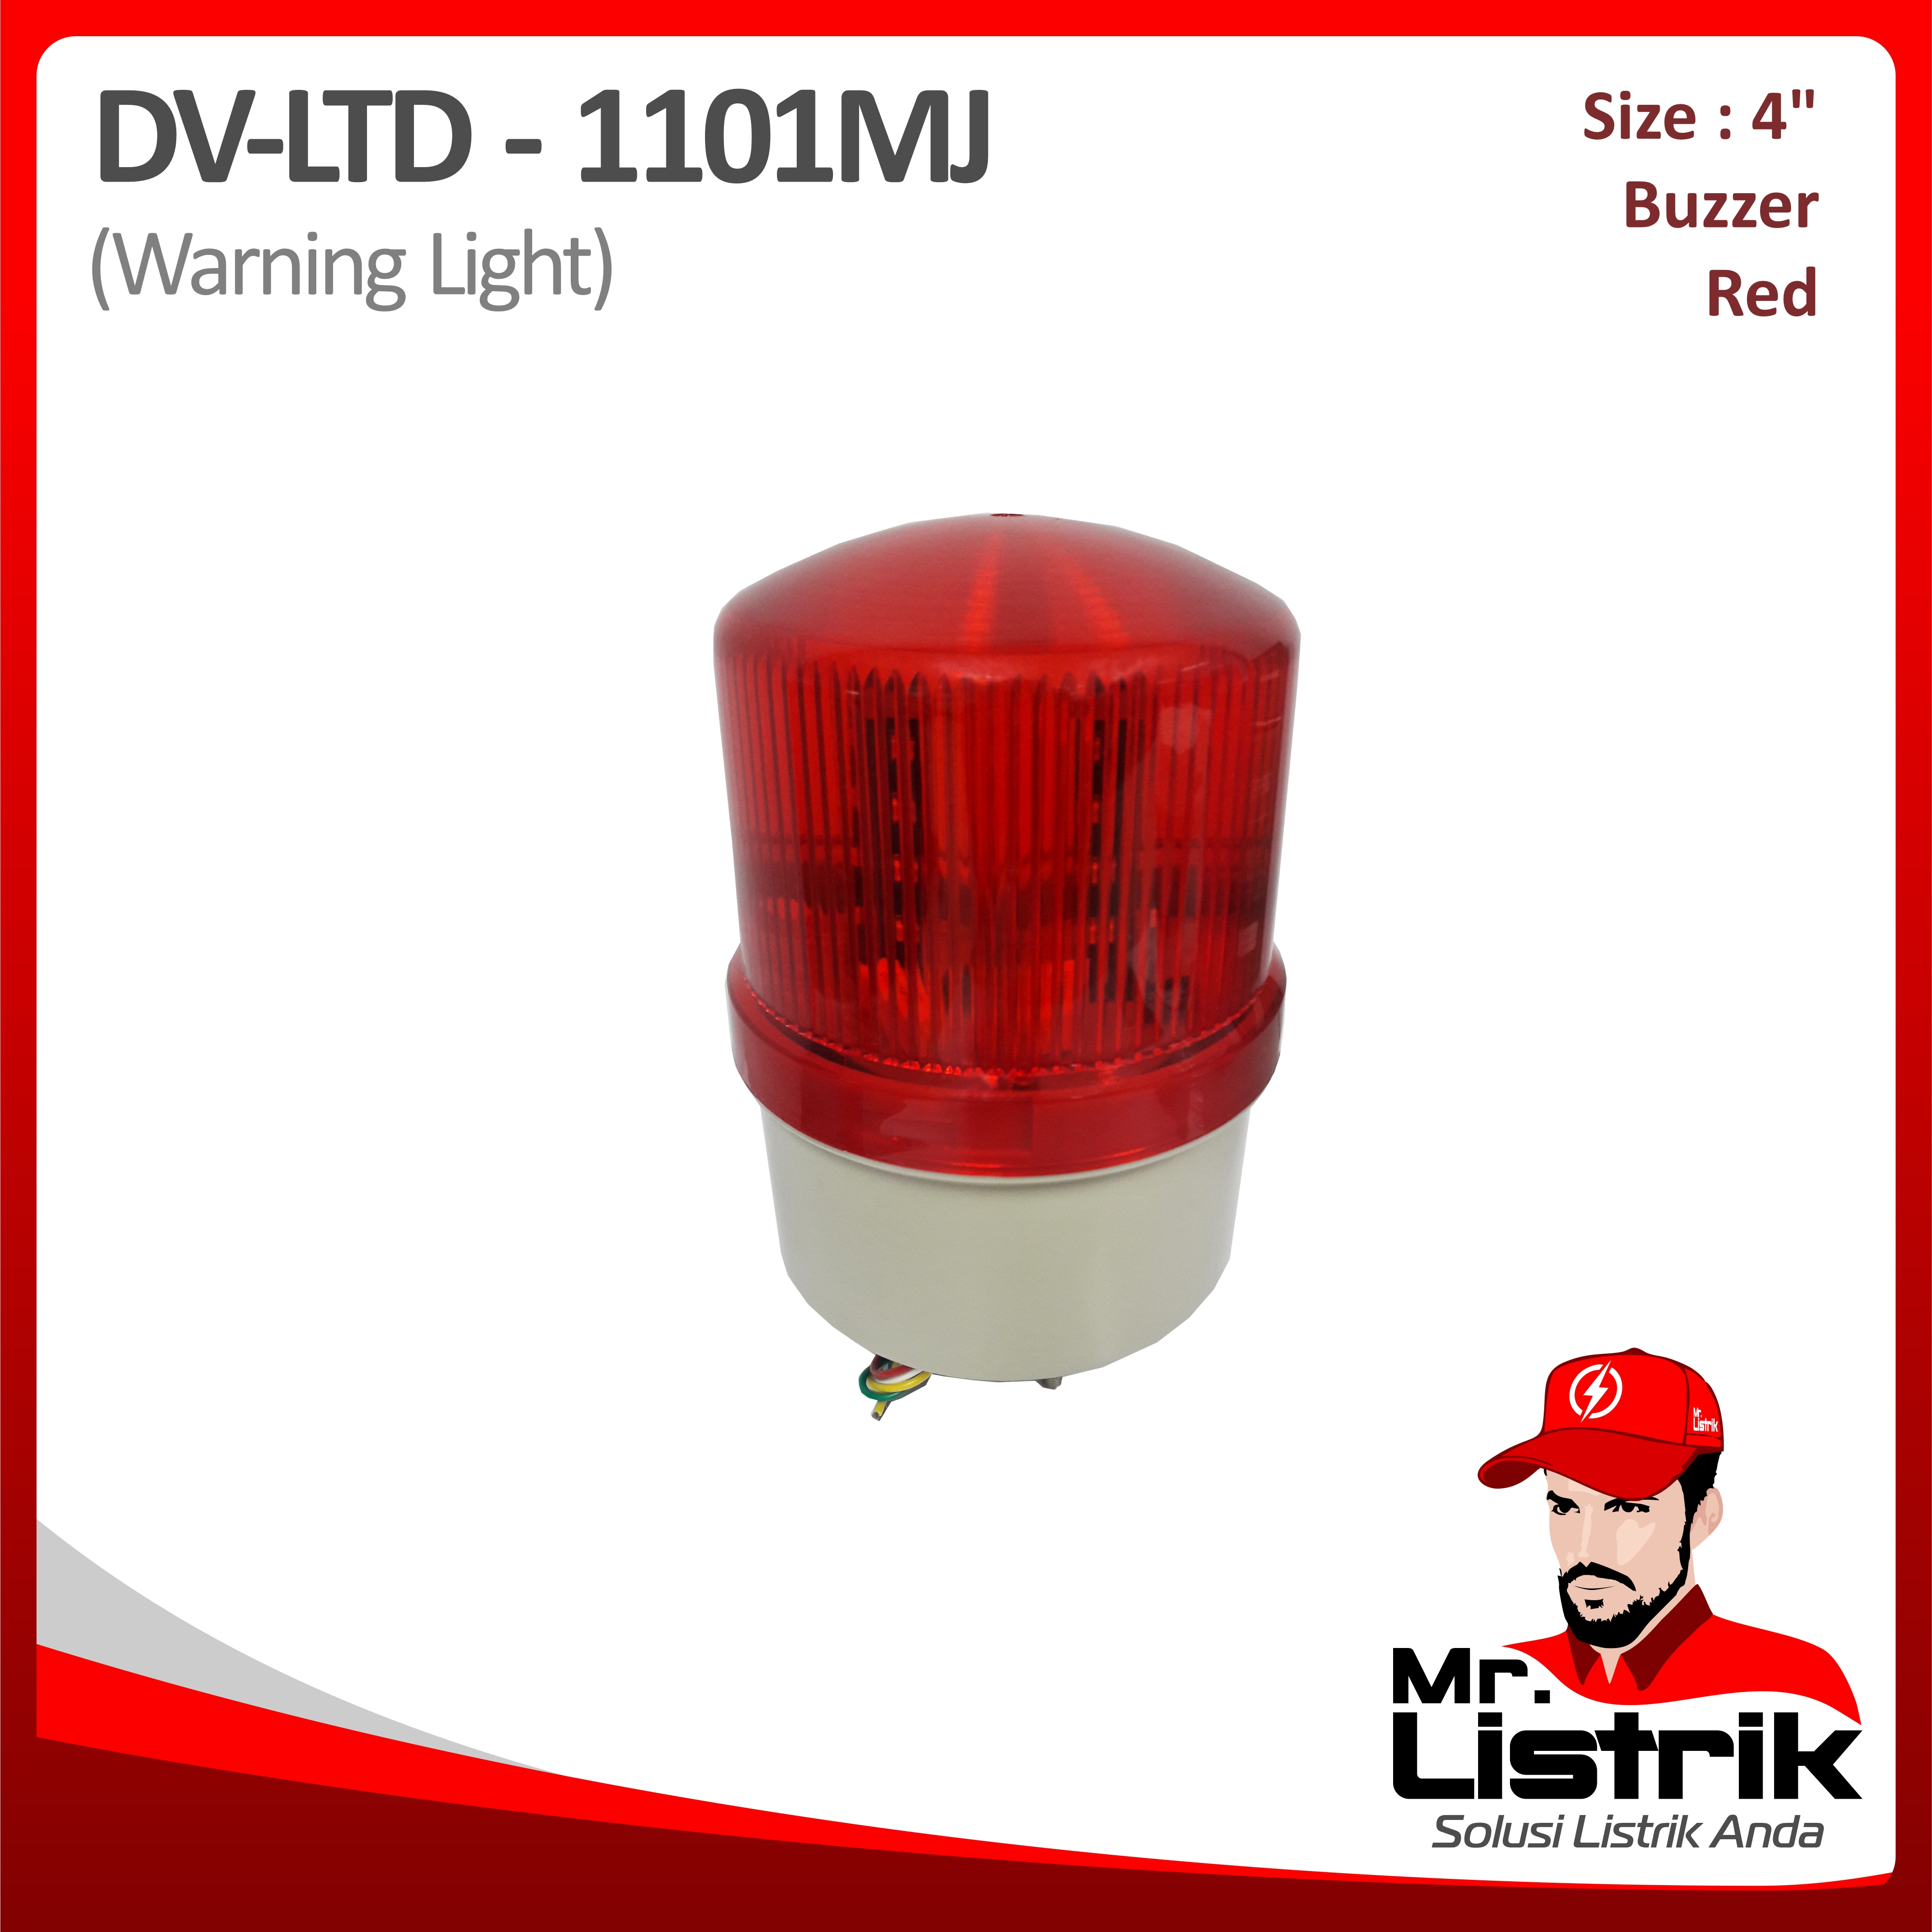 Warning Light LED Multifunction Buzzer 4 Inch Multivoltage DV LTD-1101MJ